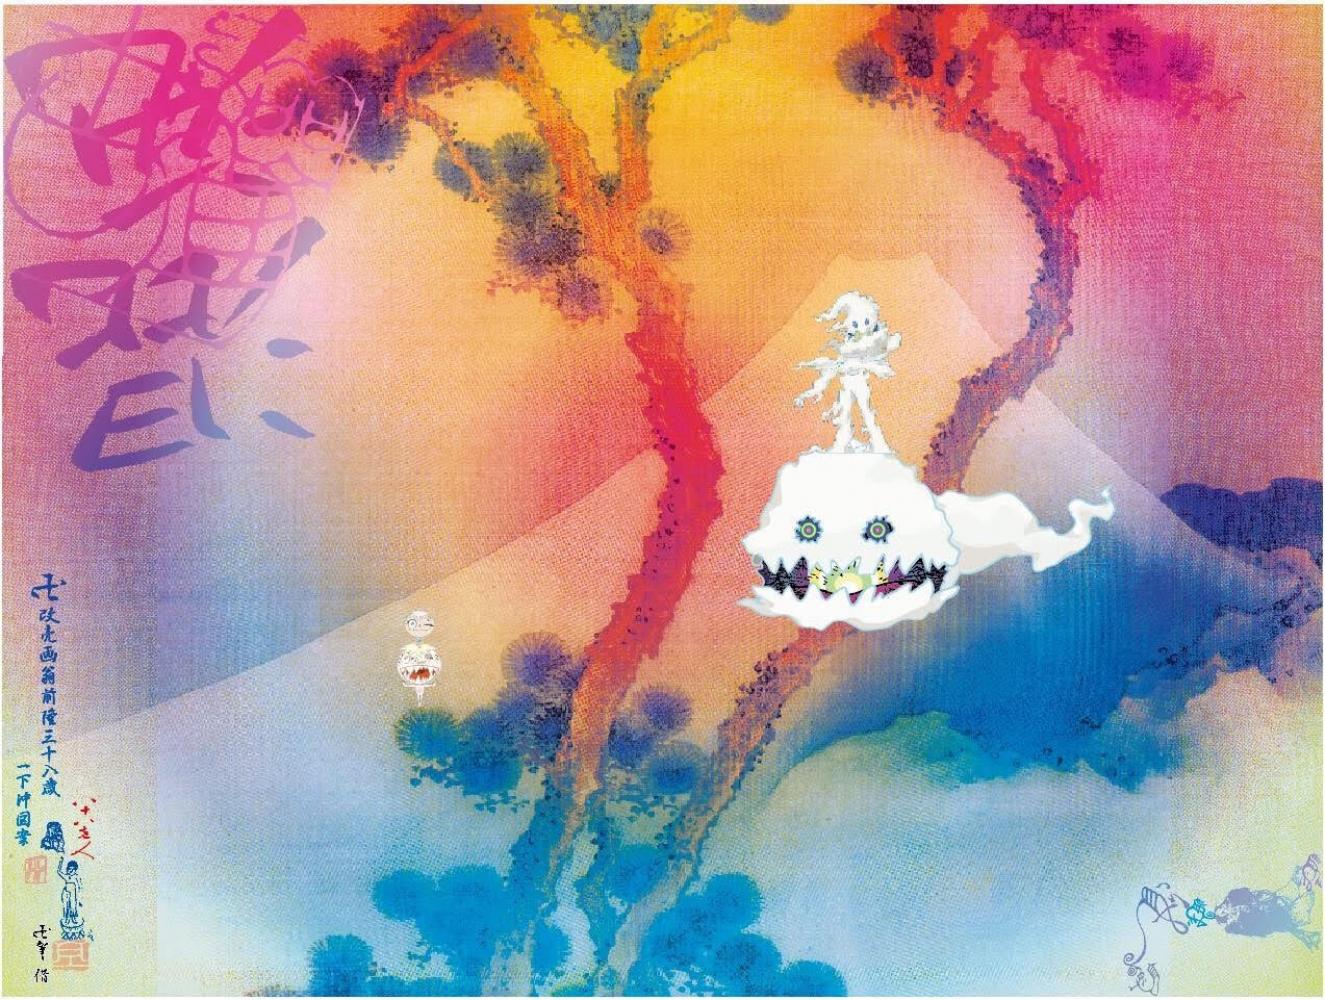 2018 gestaltete Takashi Murakami das Cover zum Album "Kids See Ghosts" von Kanye West